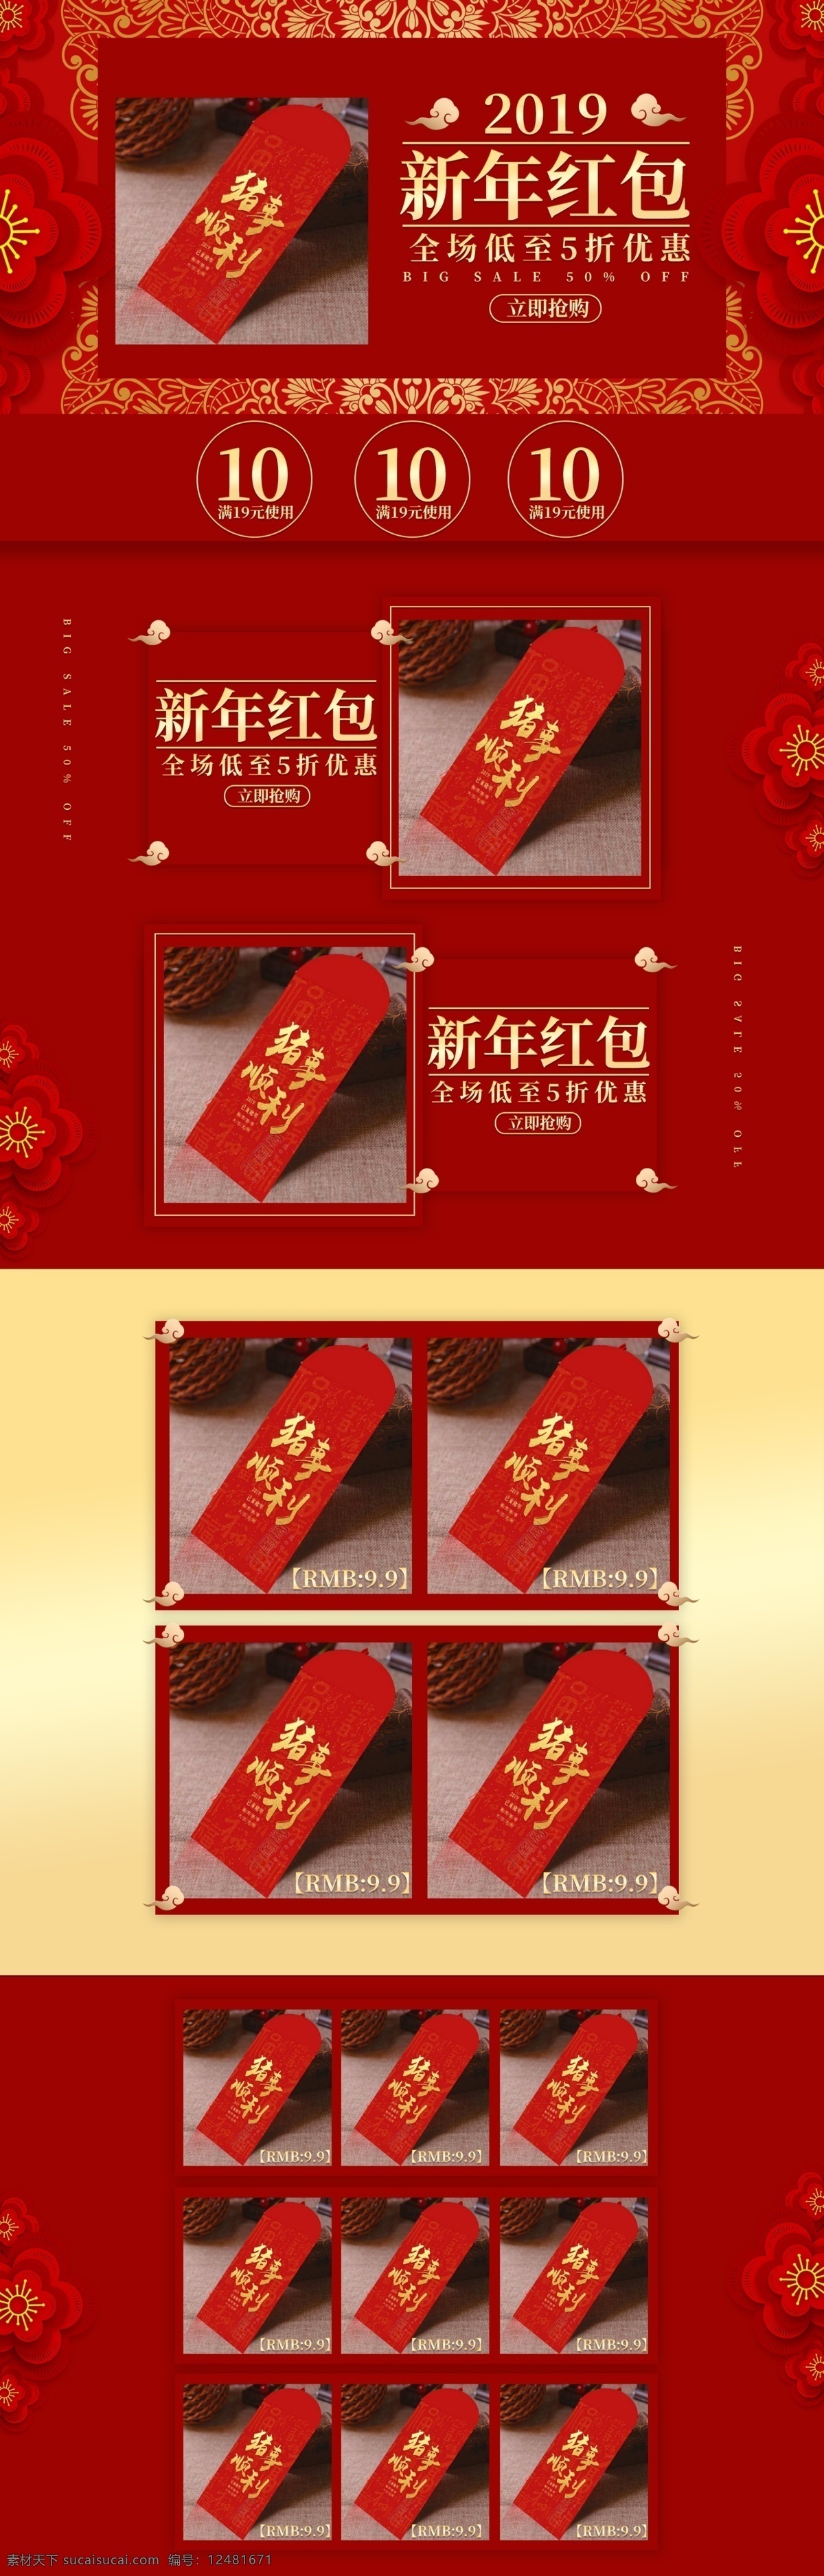 红色 金色 大气 简约 新年 红包 春节 用品 首页 模板